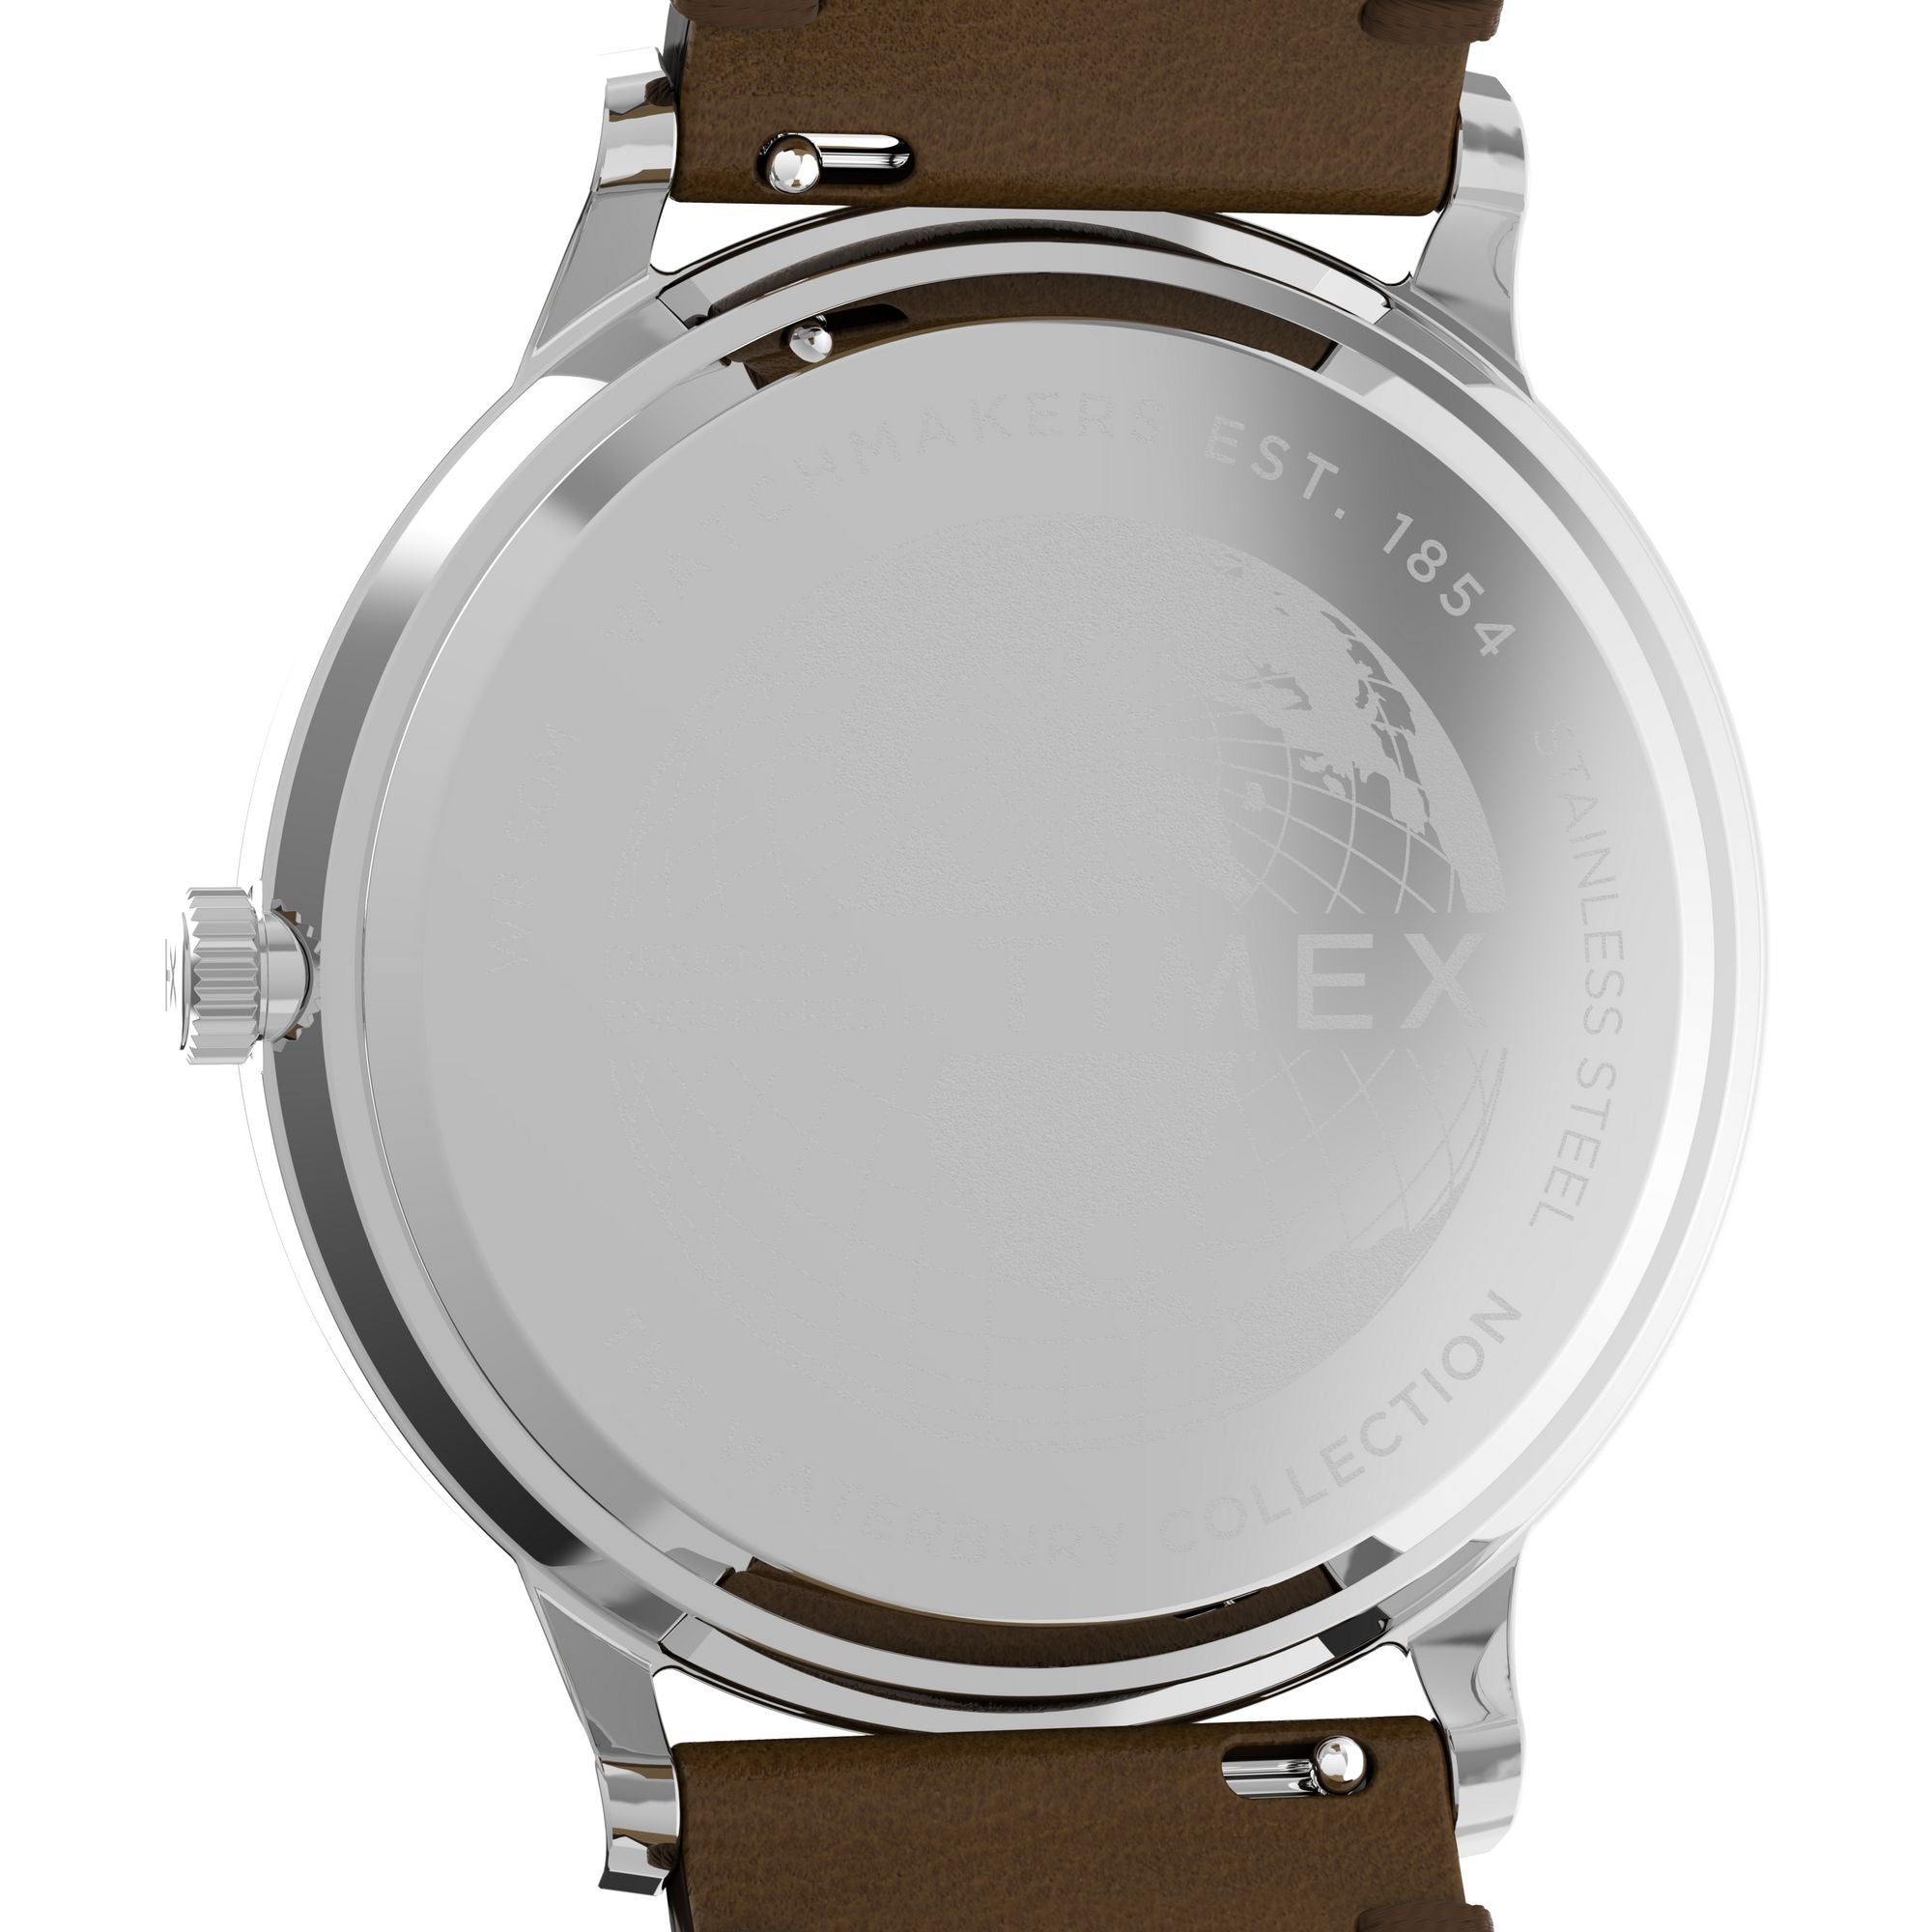 Tenx TM-90 White Analog Watch - for Men : Amazon.in: Fashion